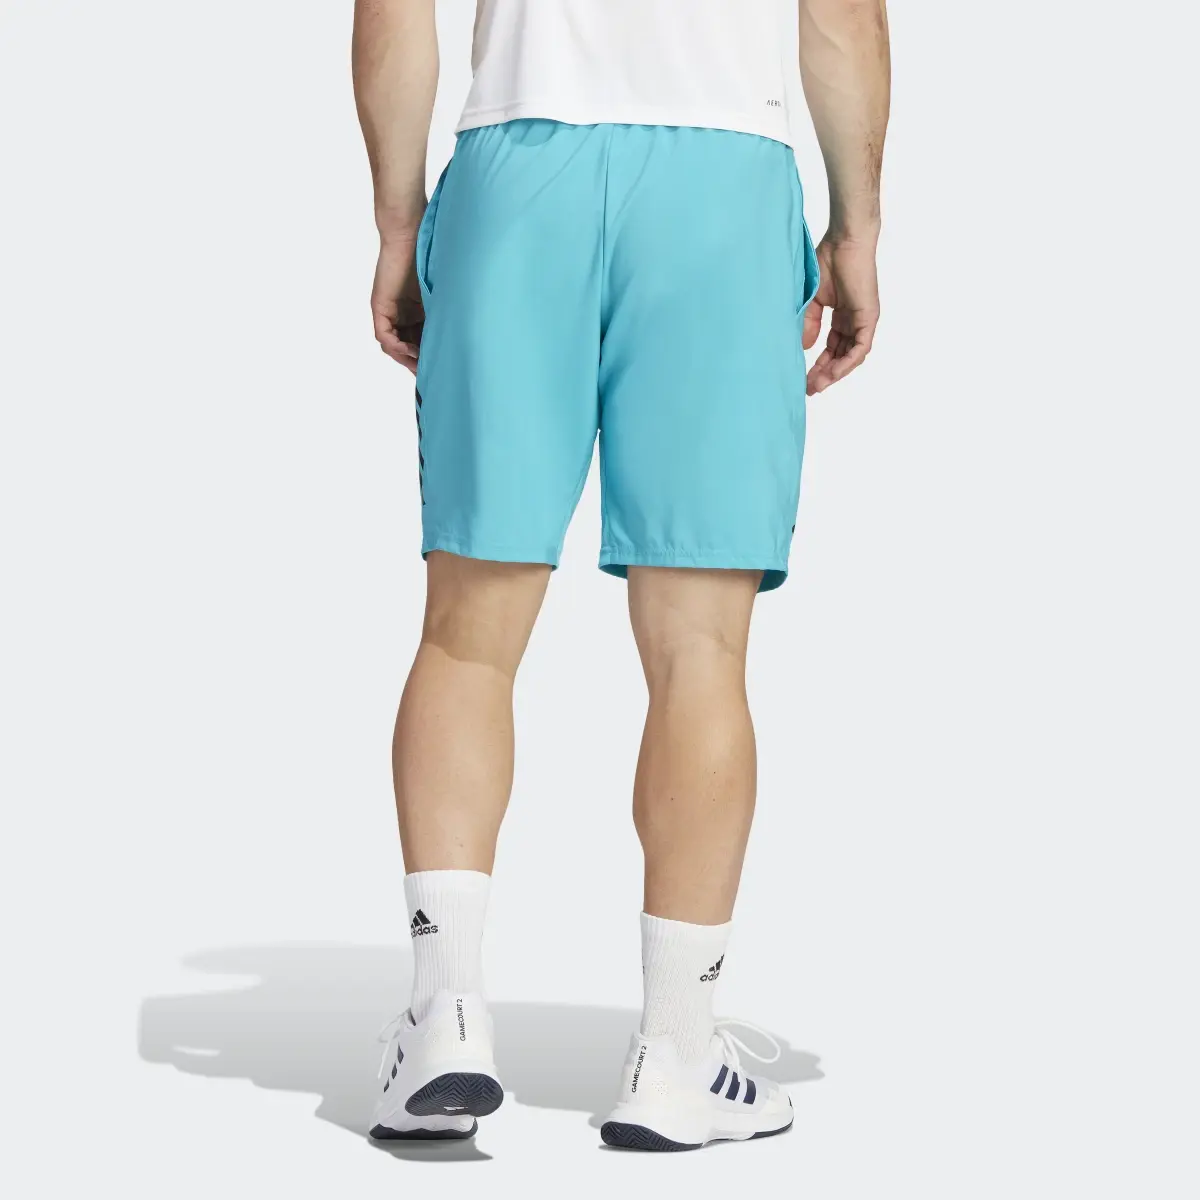 Adidas Club 3-Stripes Tennis Shorts. 2